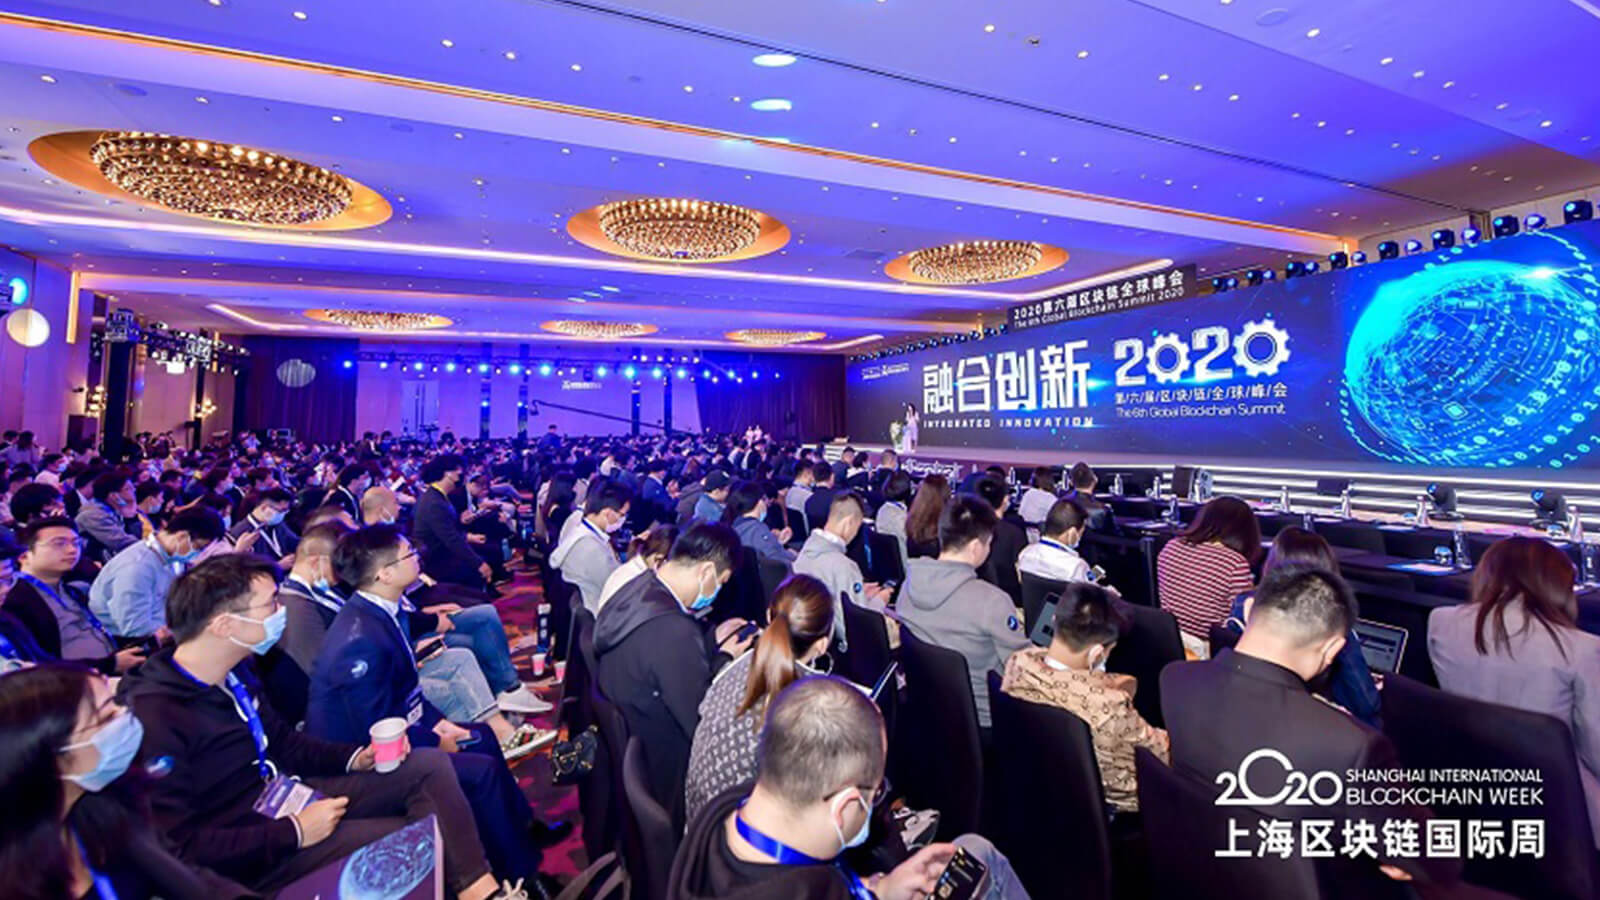 Shanghai Blockchain Week 2020